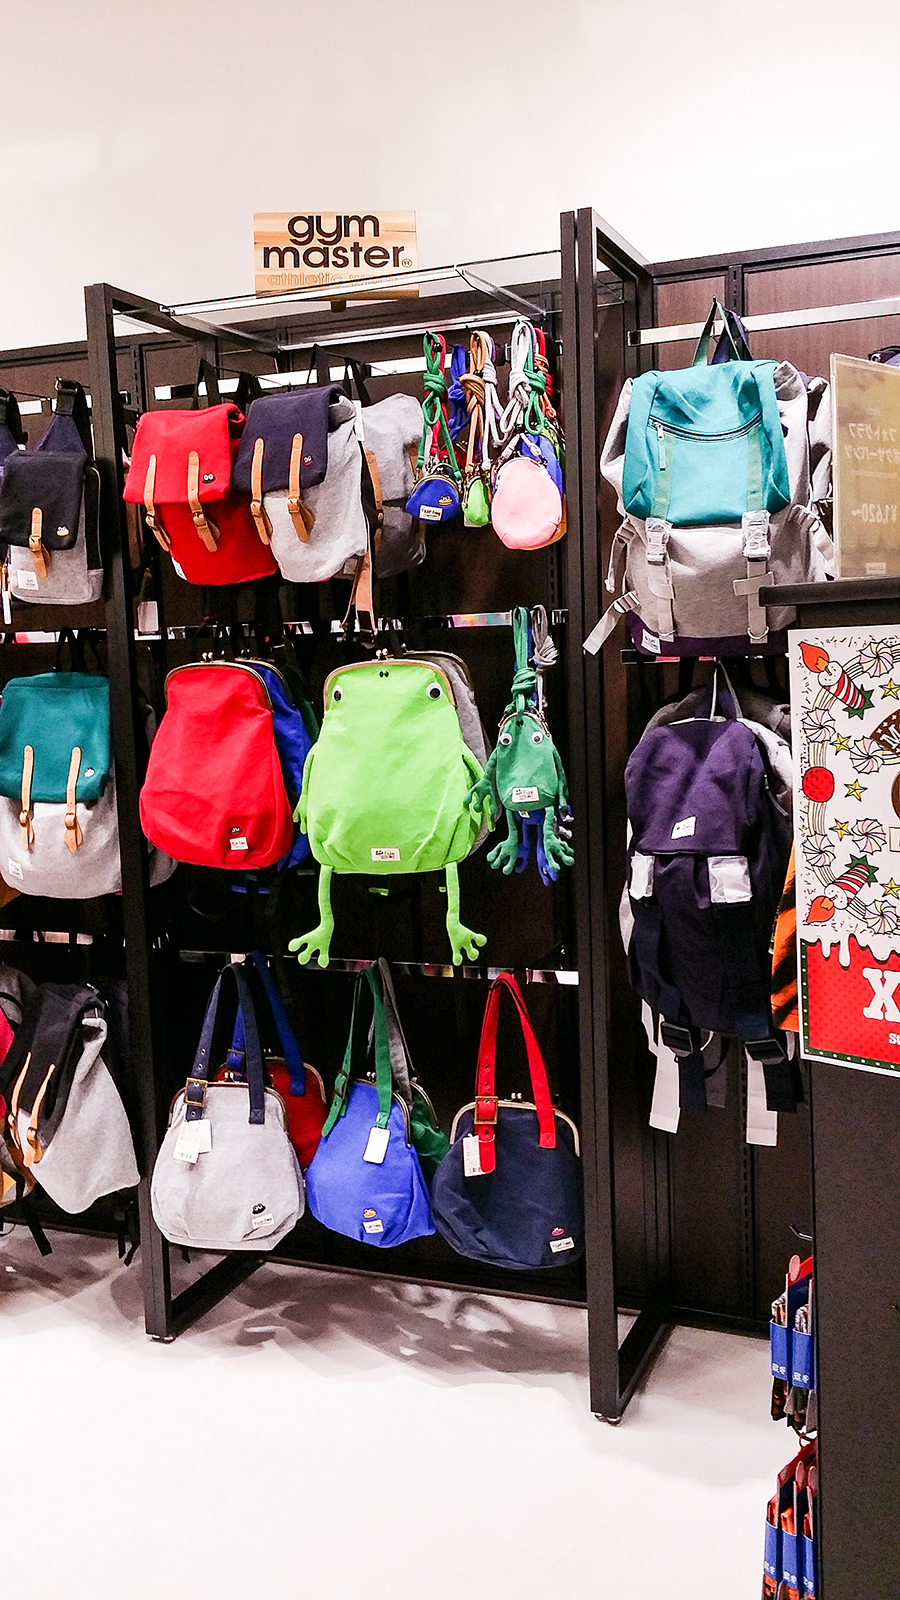 Cute frog backpack in Tokyo, Japan.